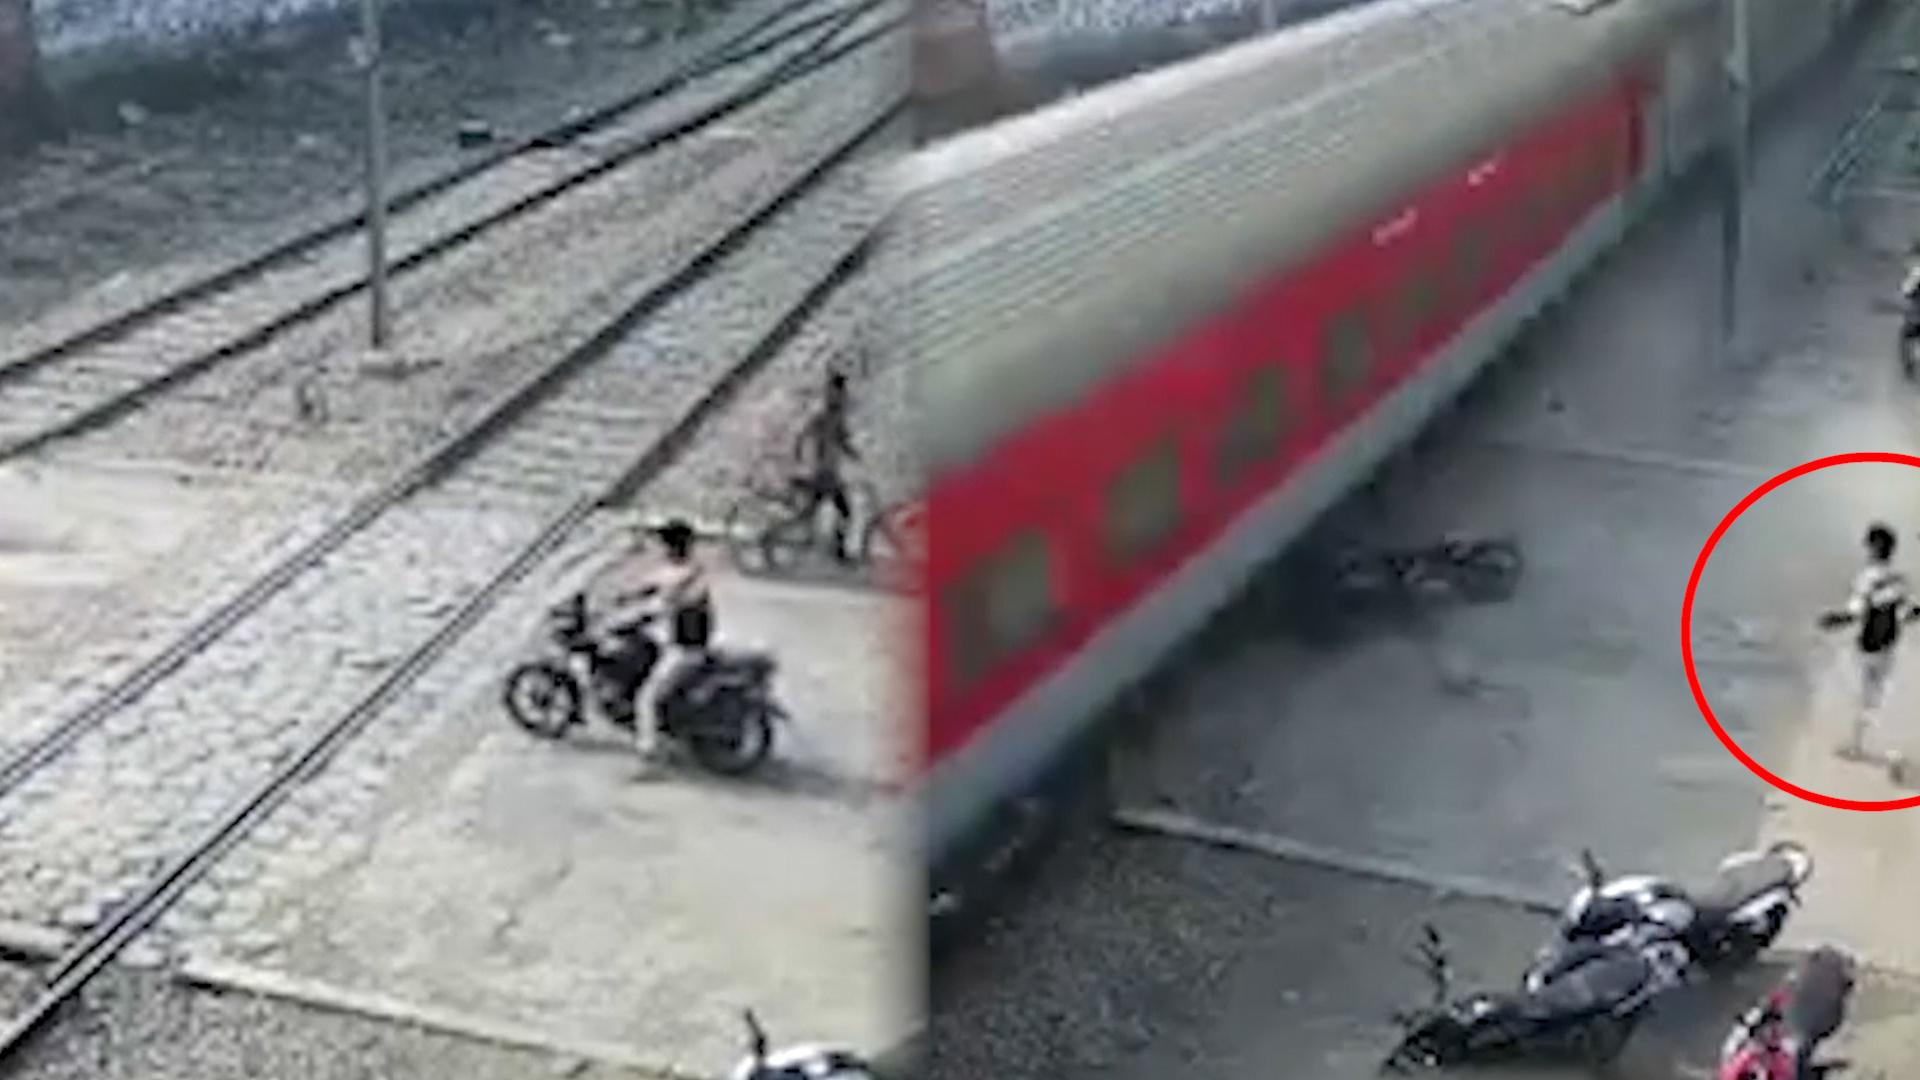 幸运！摩托车铁道前突然熄火 车主下车瞬间一火车驶过将摩托碾碎